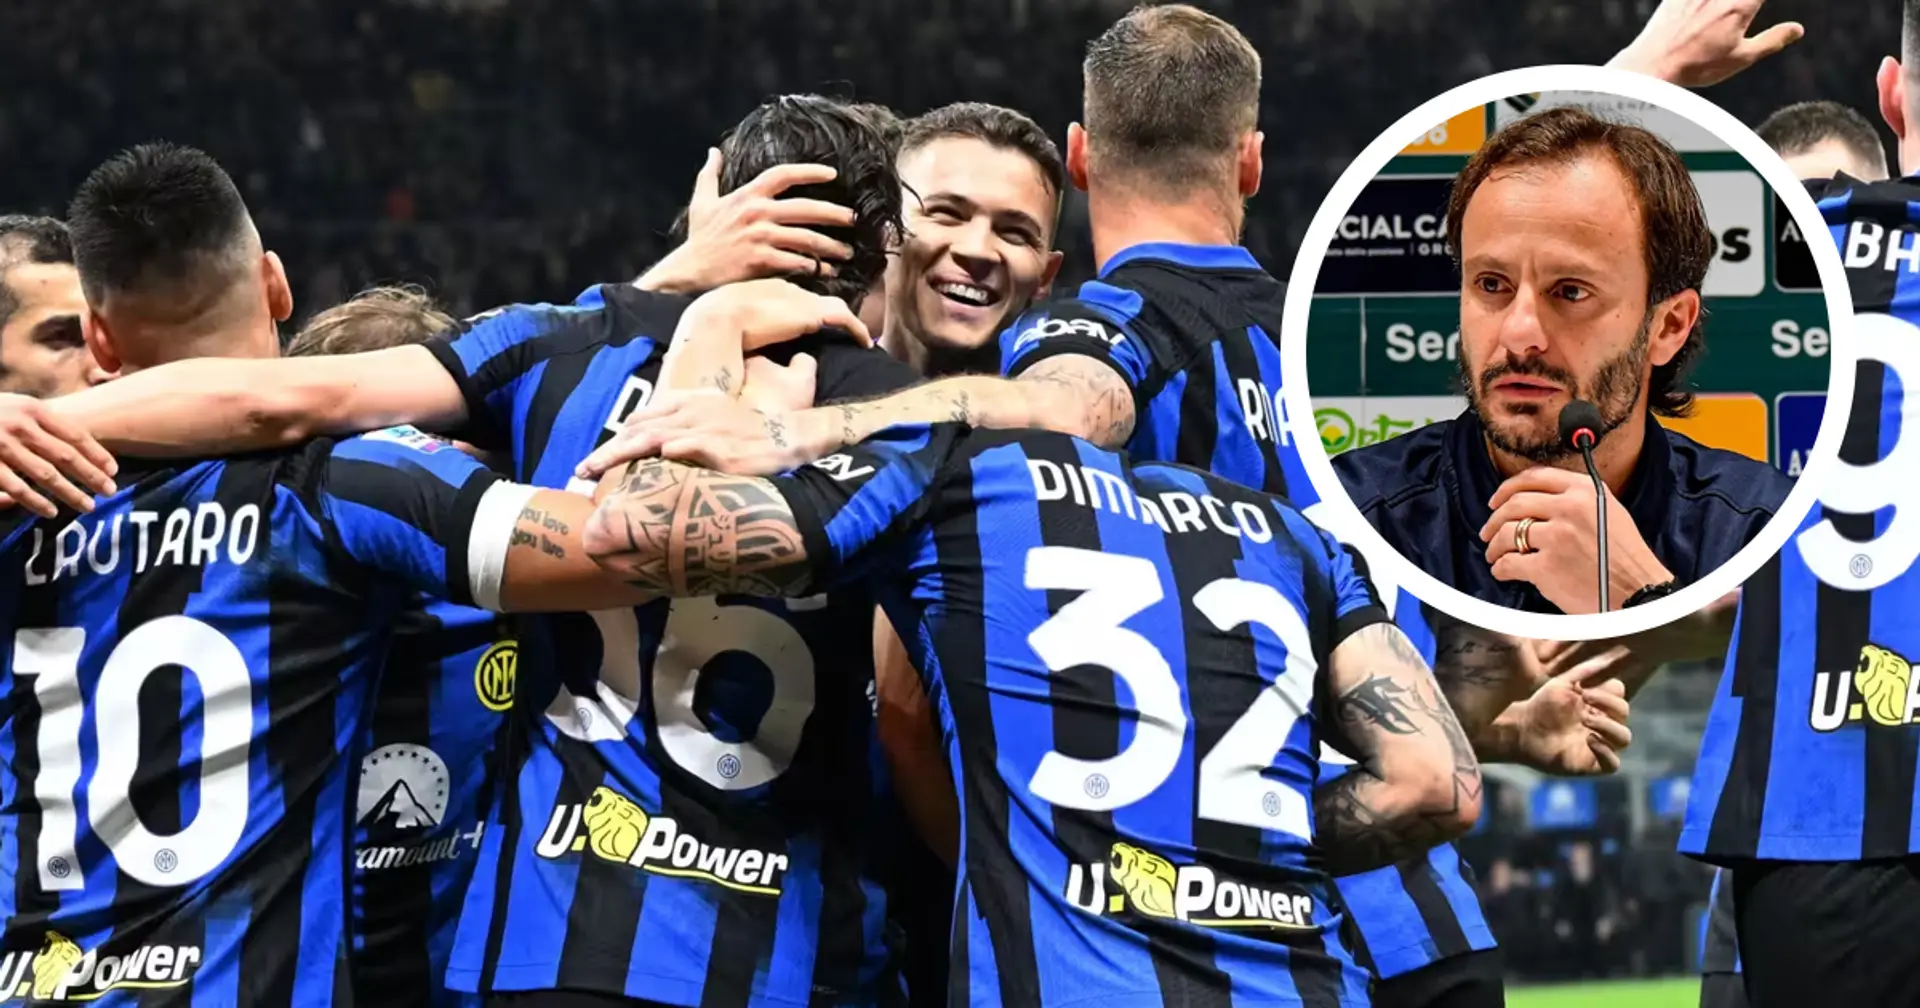 Gilardino teme la sfida con l'Inter: "Punti deboli? A oggi hanno dimostrato di non averne"